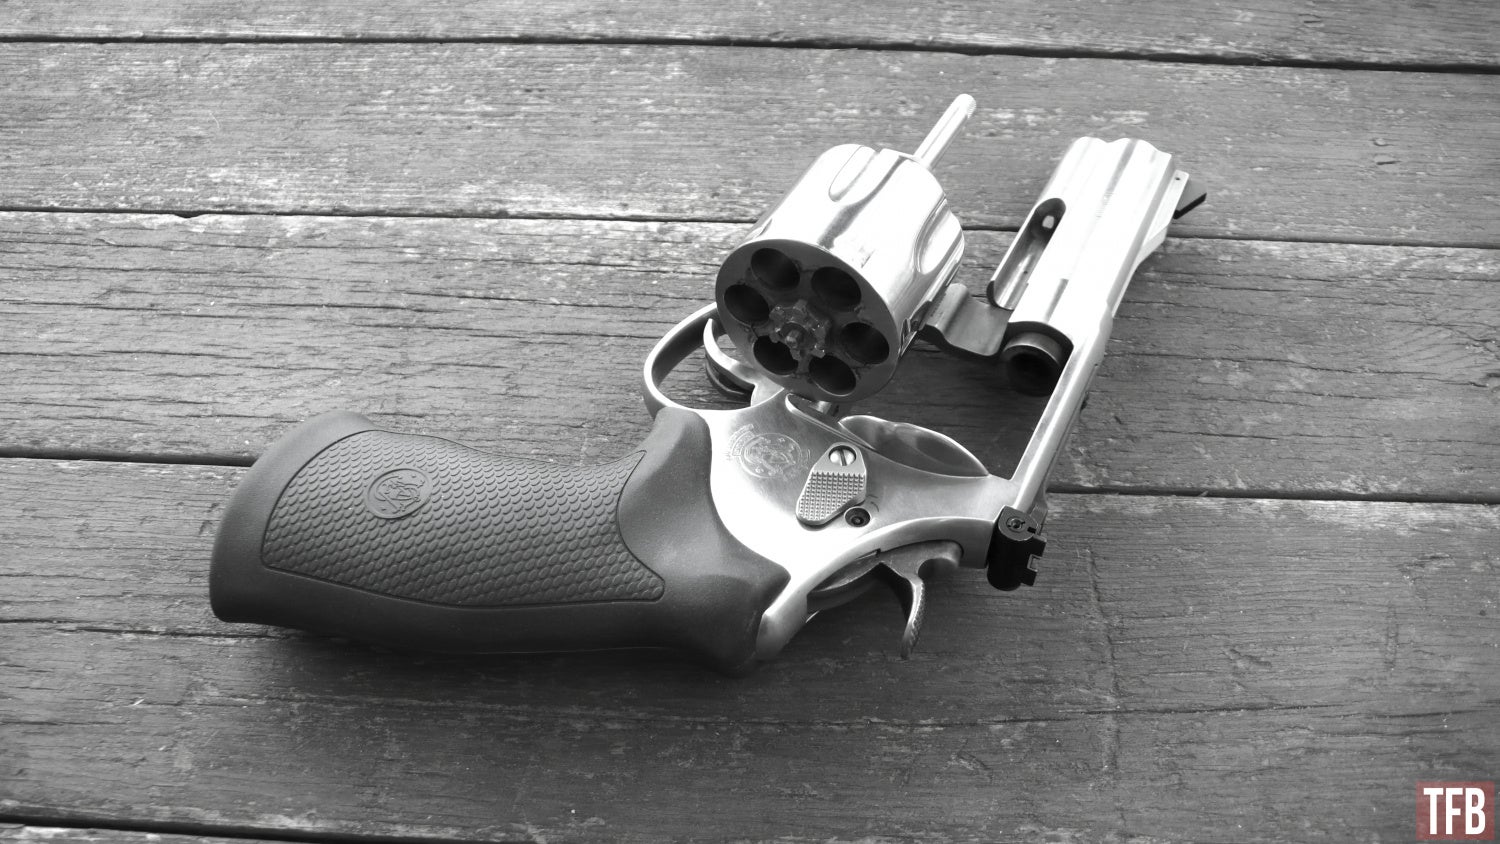 S&W 610, 10mm revolver